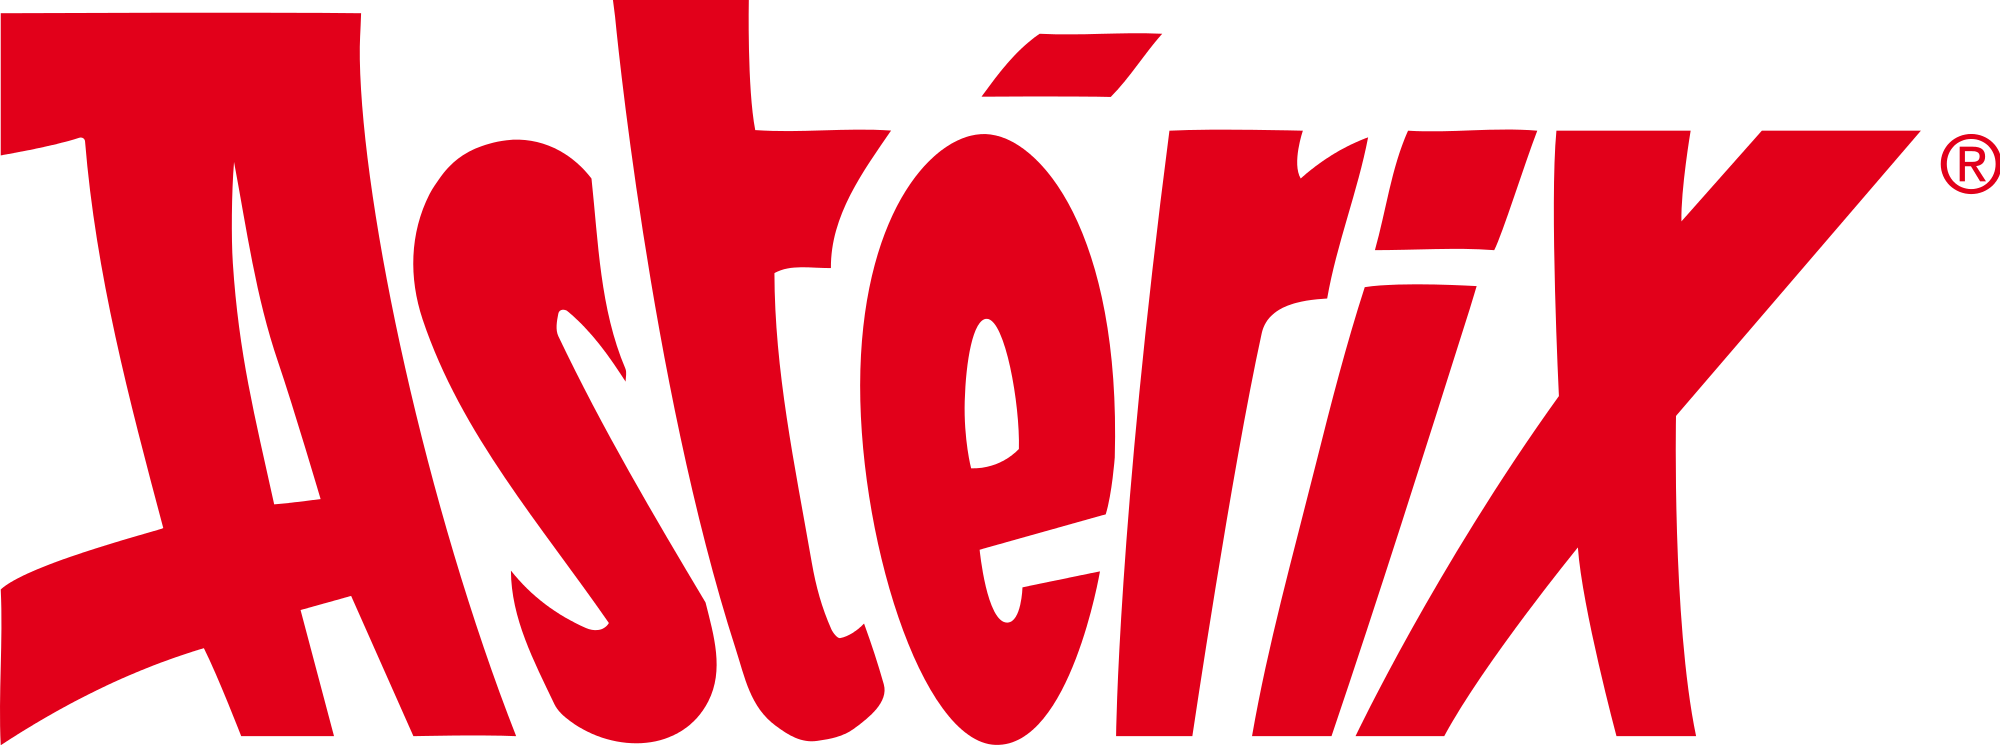 Logo Asterix PNG - 111183